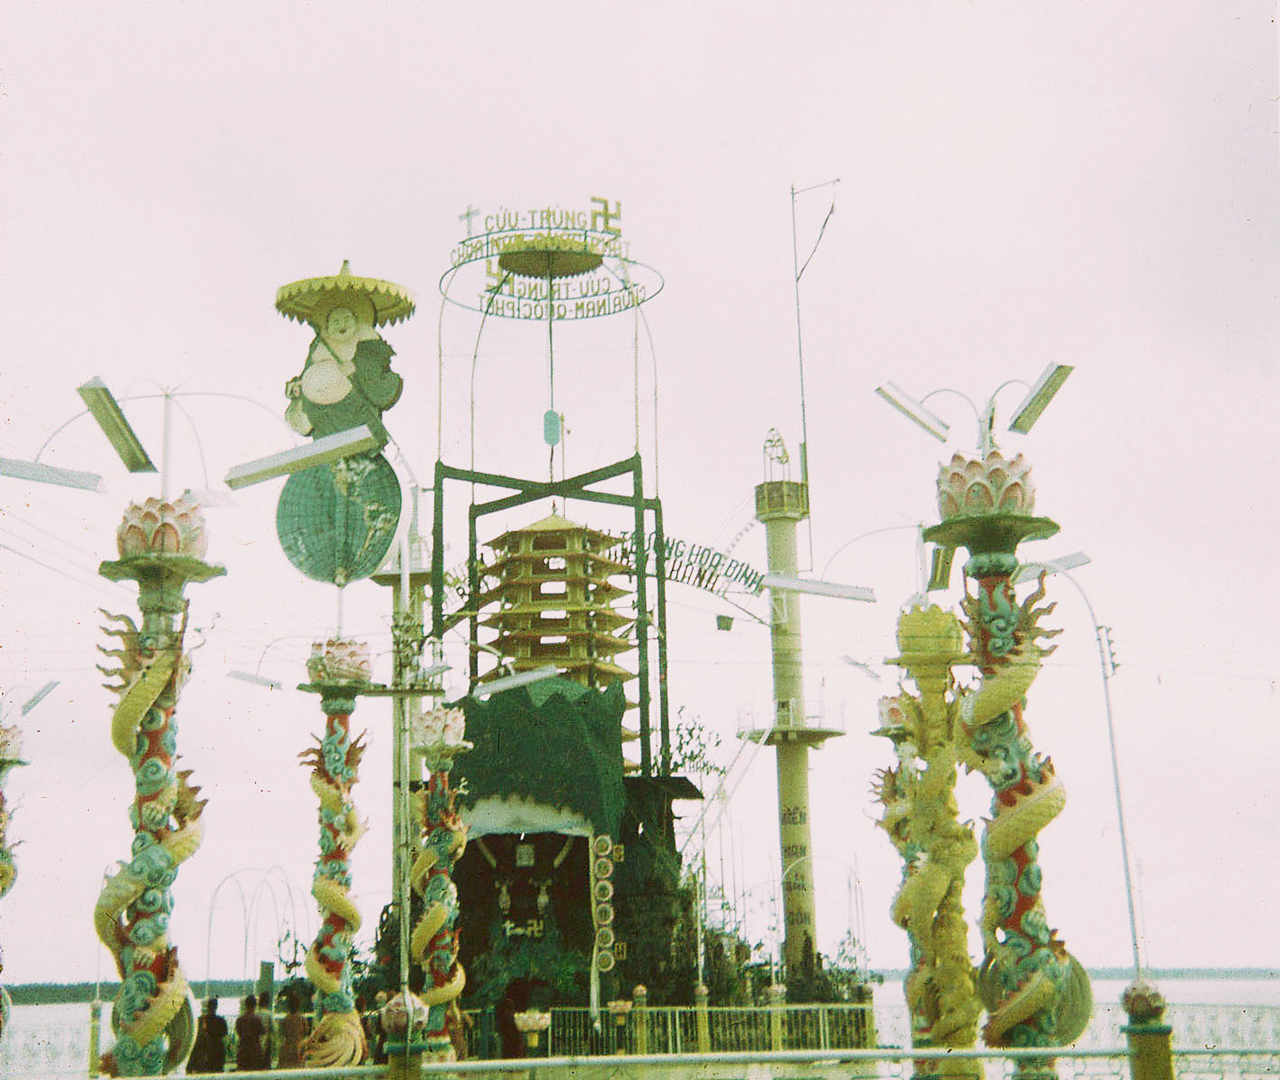 Đàn cầu của Đạo Dừa tại Cồn Phụng gần Mỹ Tho trước đây năm 1969-1970 - Photo by Bob Lee